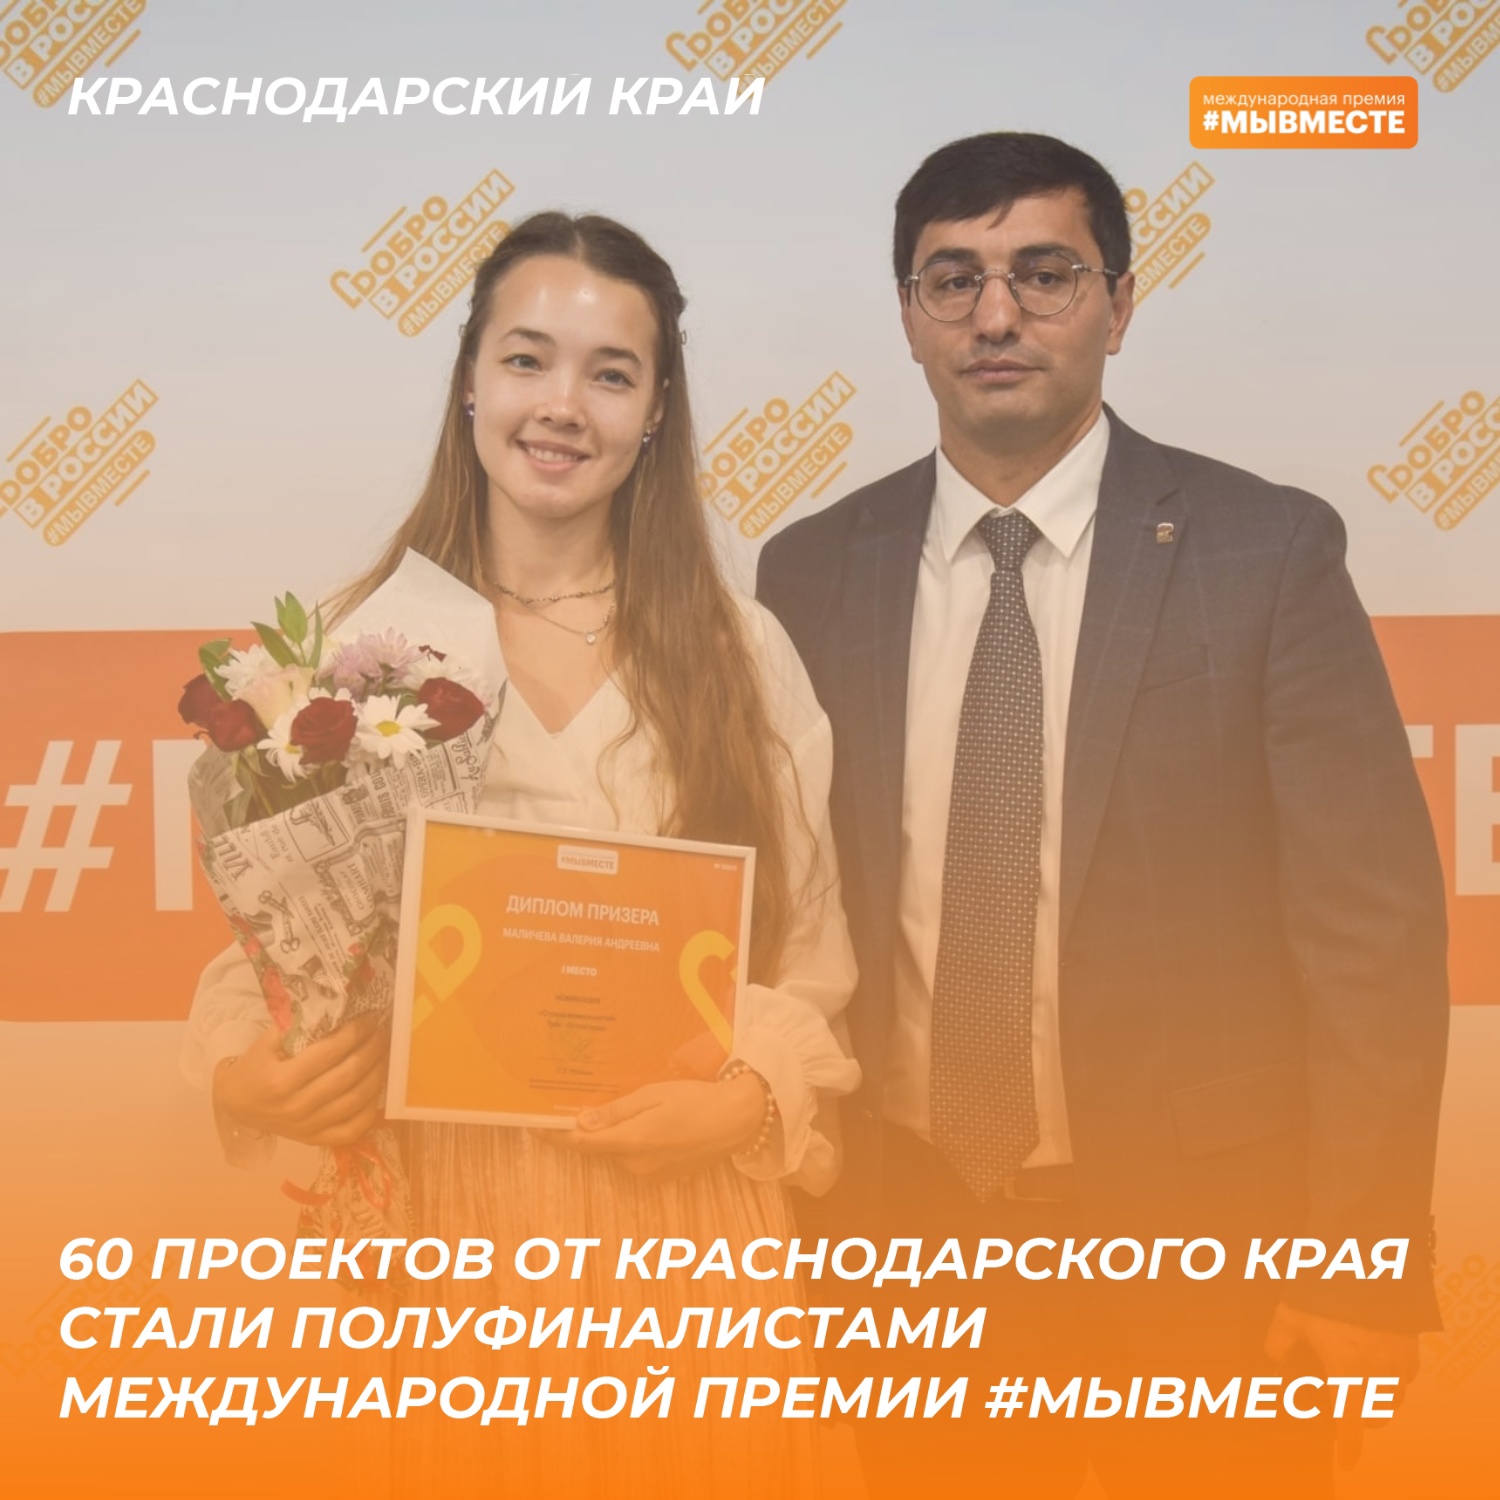 60 проектов от Краснодарского края прошли в полуфинал Международной премии #МЫВМЕСТЕ